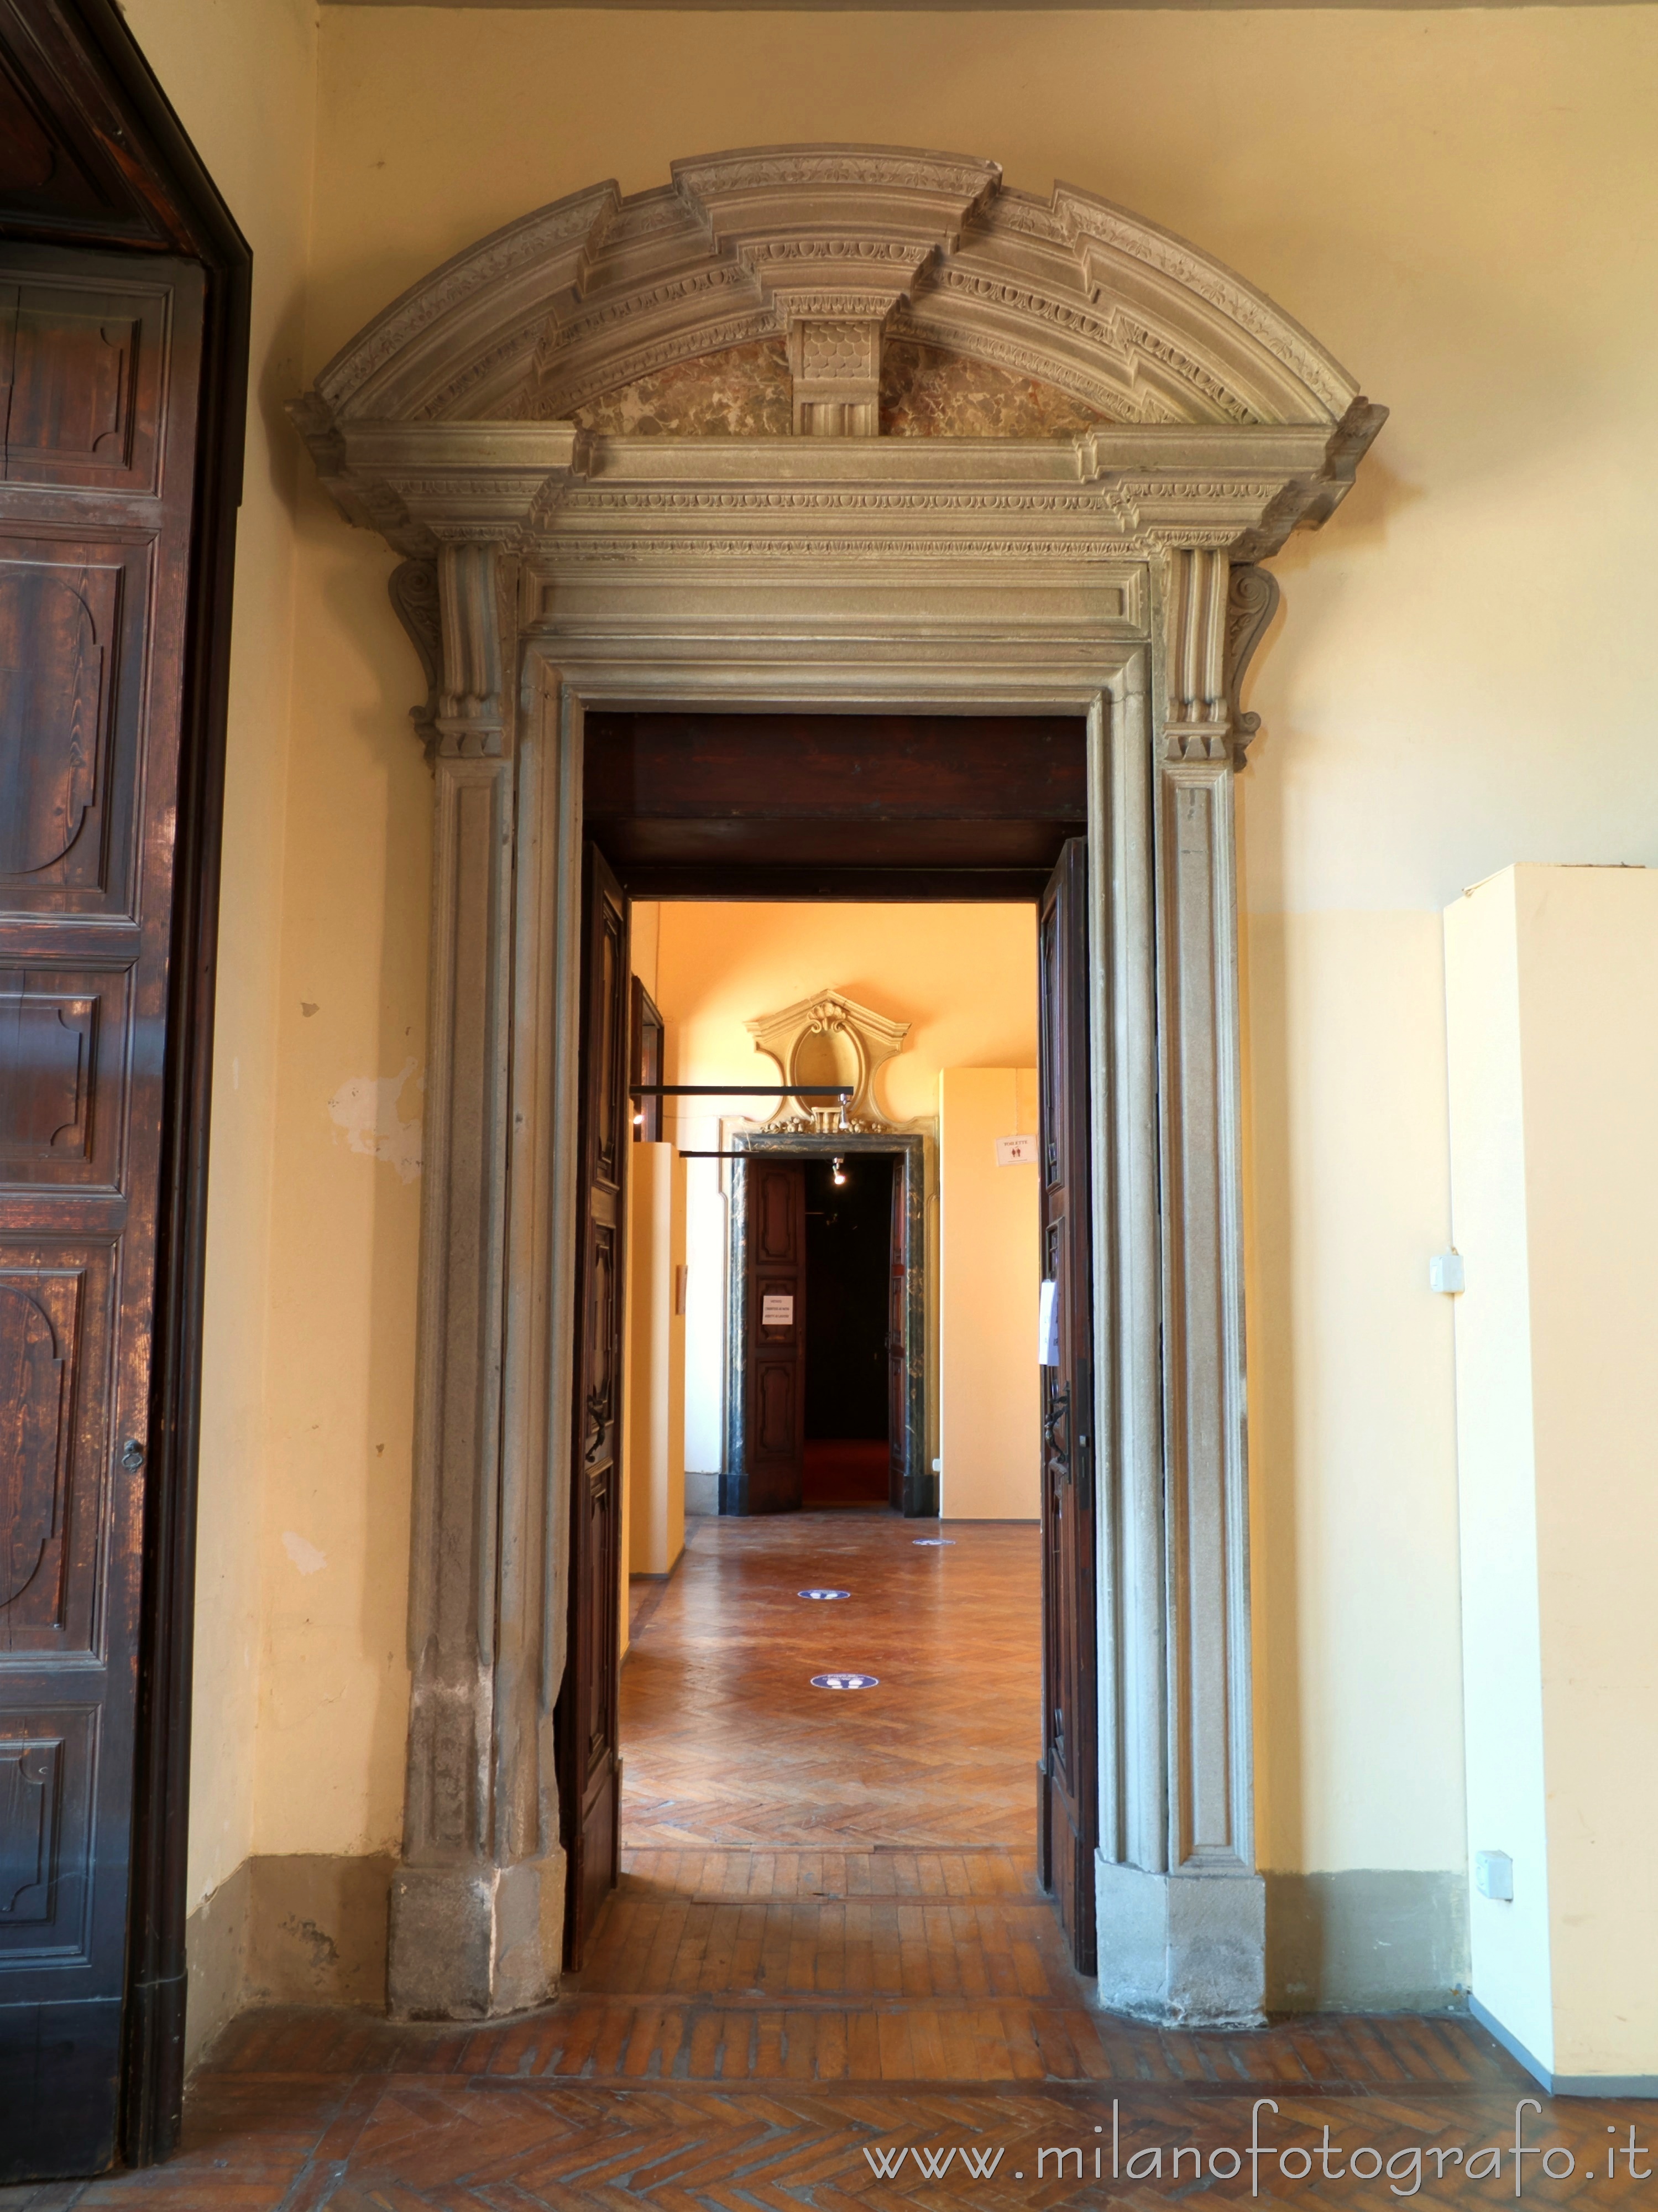 Varedo (Monza e Brianza): Portale interno in Villa Bagatti Valsecchi - Varedo (Monza e Brianza)